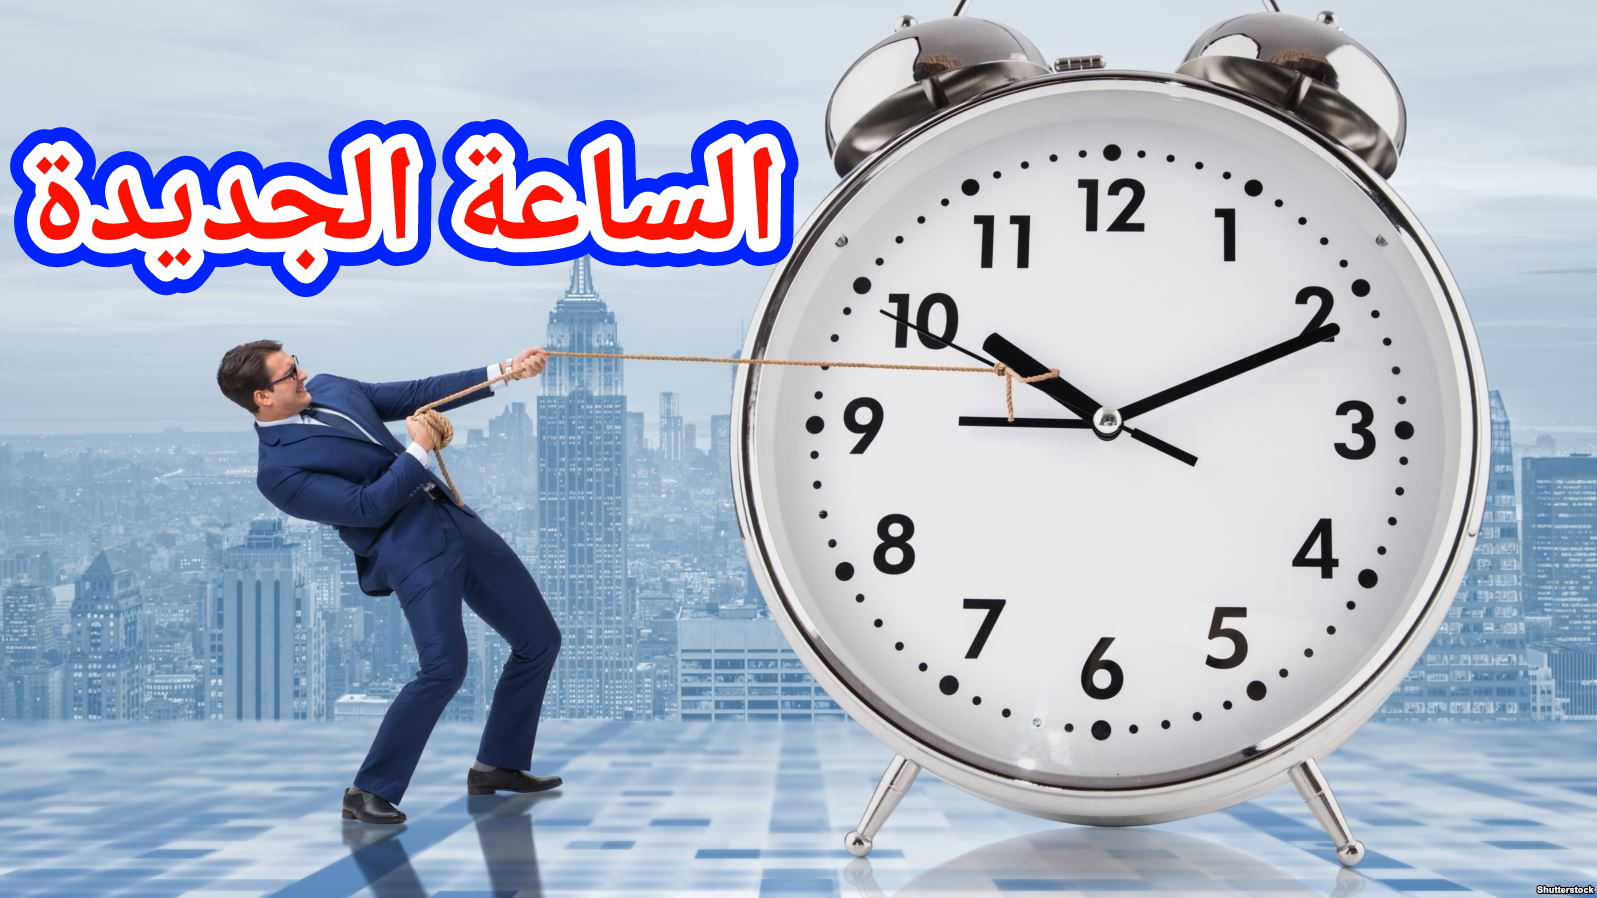 رسميا… الوزارة تعلن للمغاربة توقيت عودة الساعة الجديدة =بلاغ=